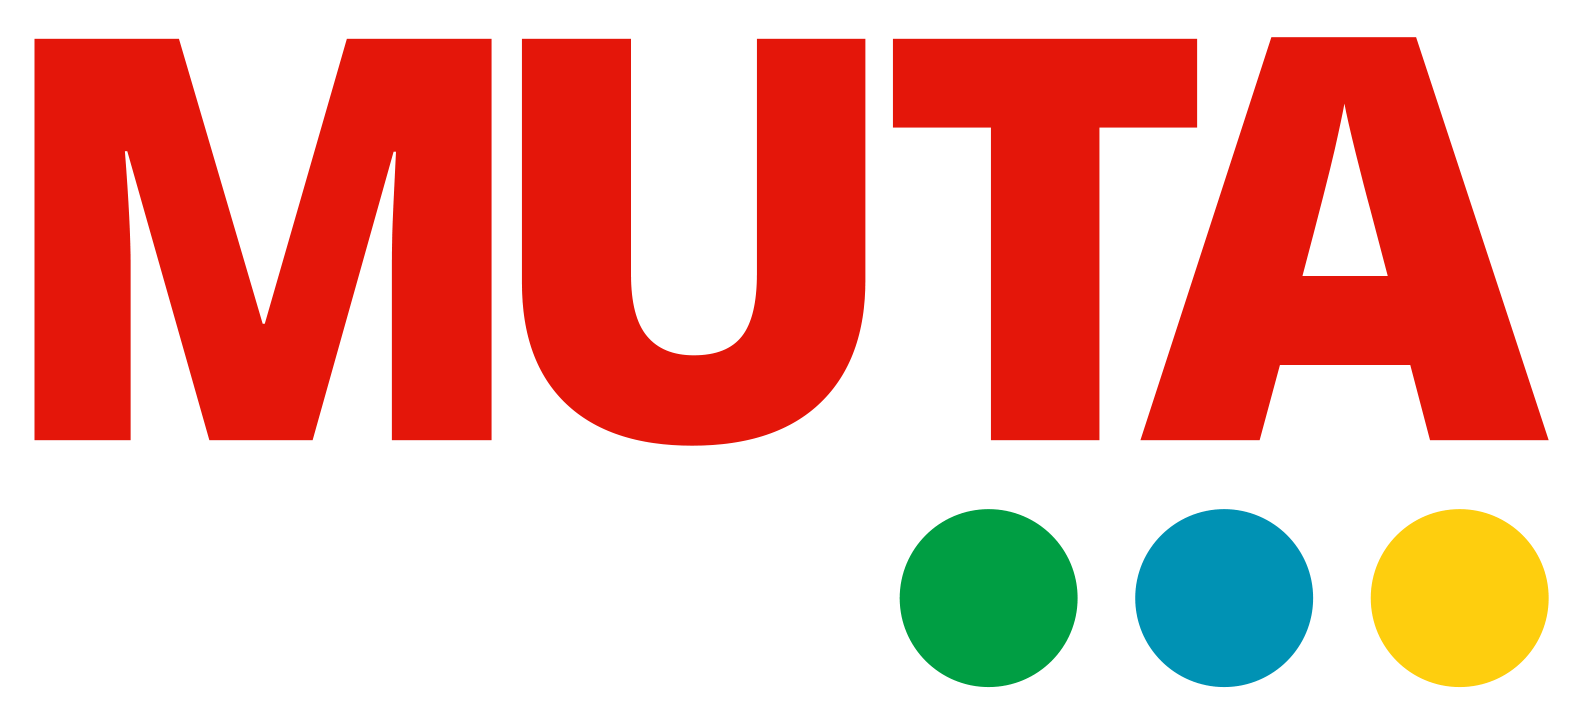 MUTA logo